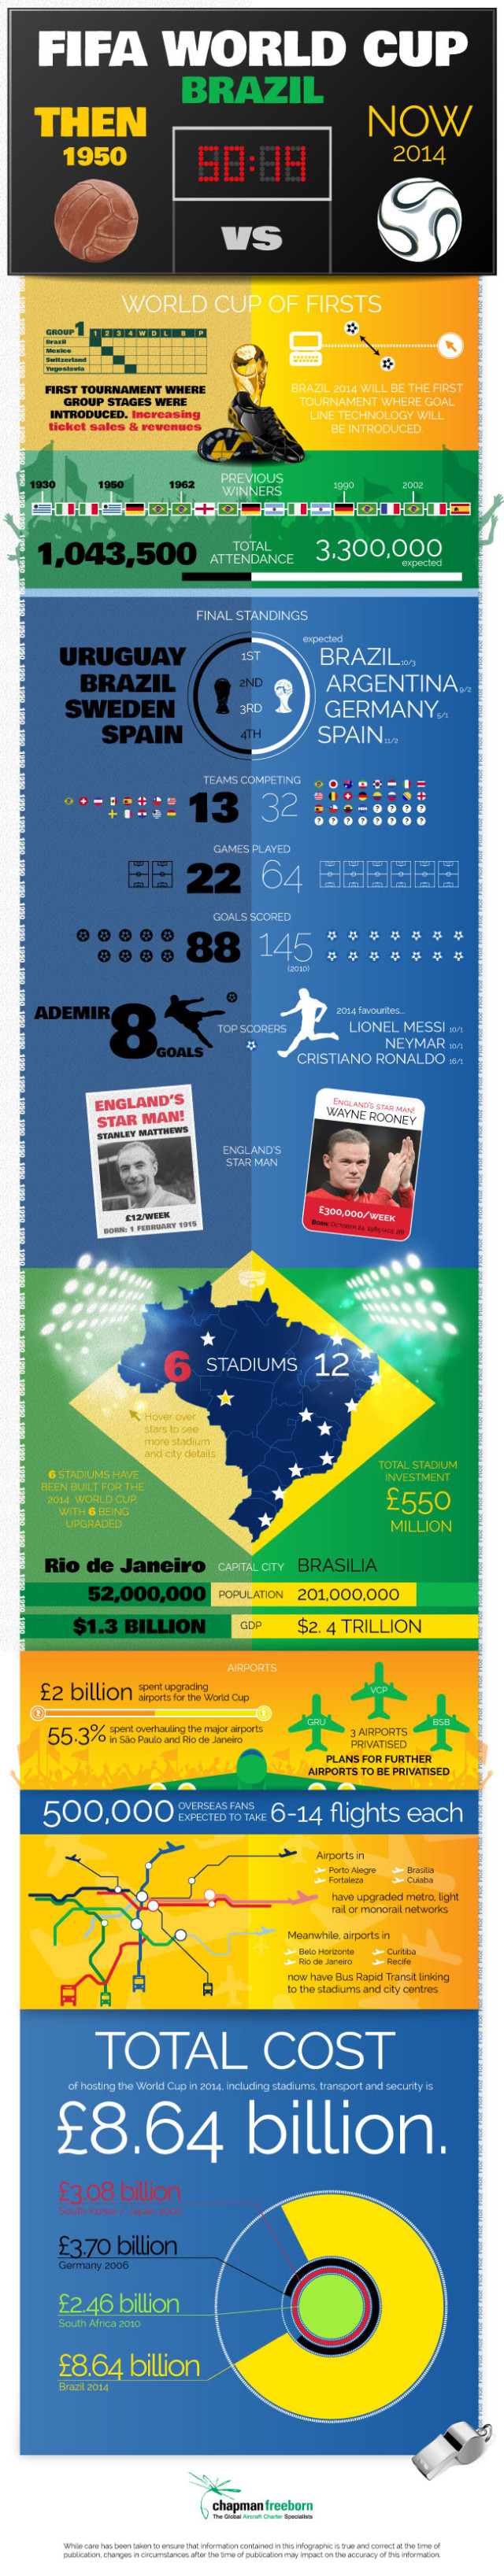 Brazil World Cup info